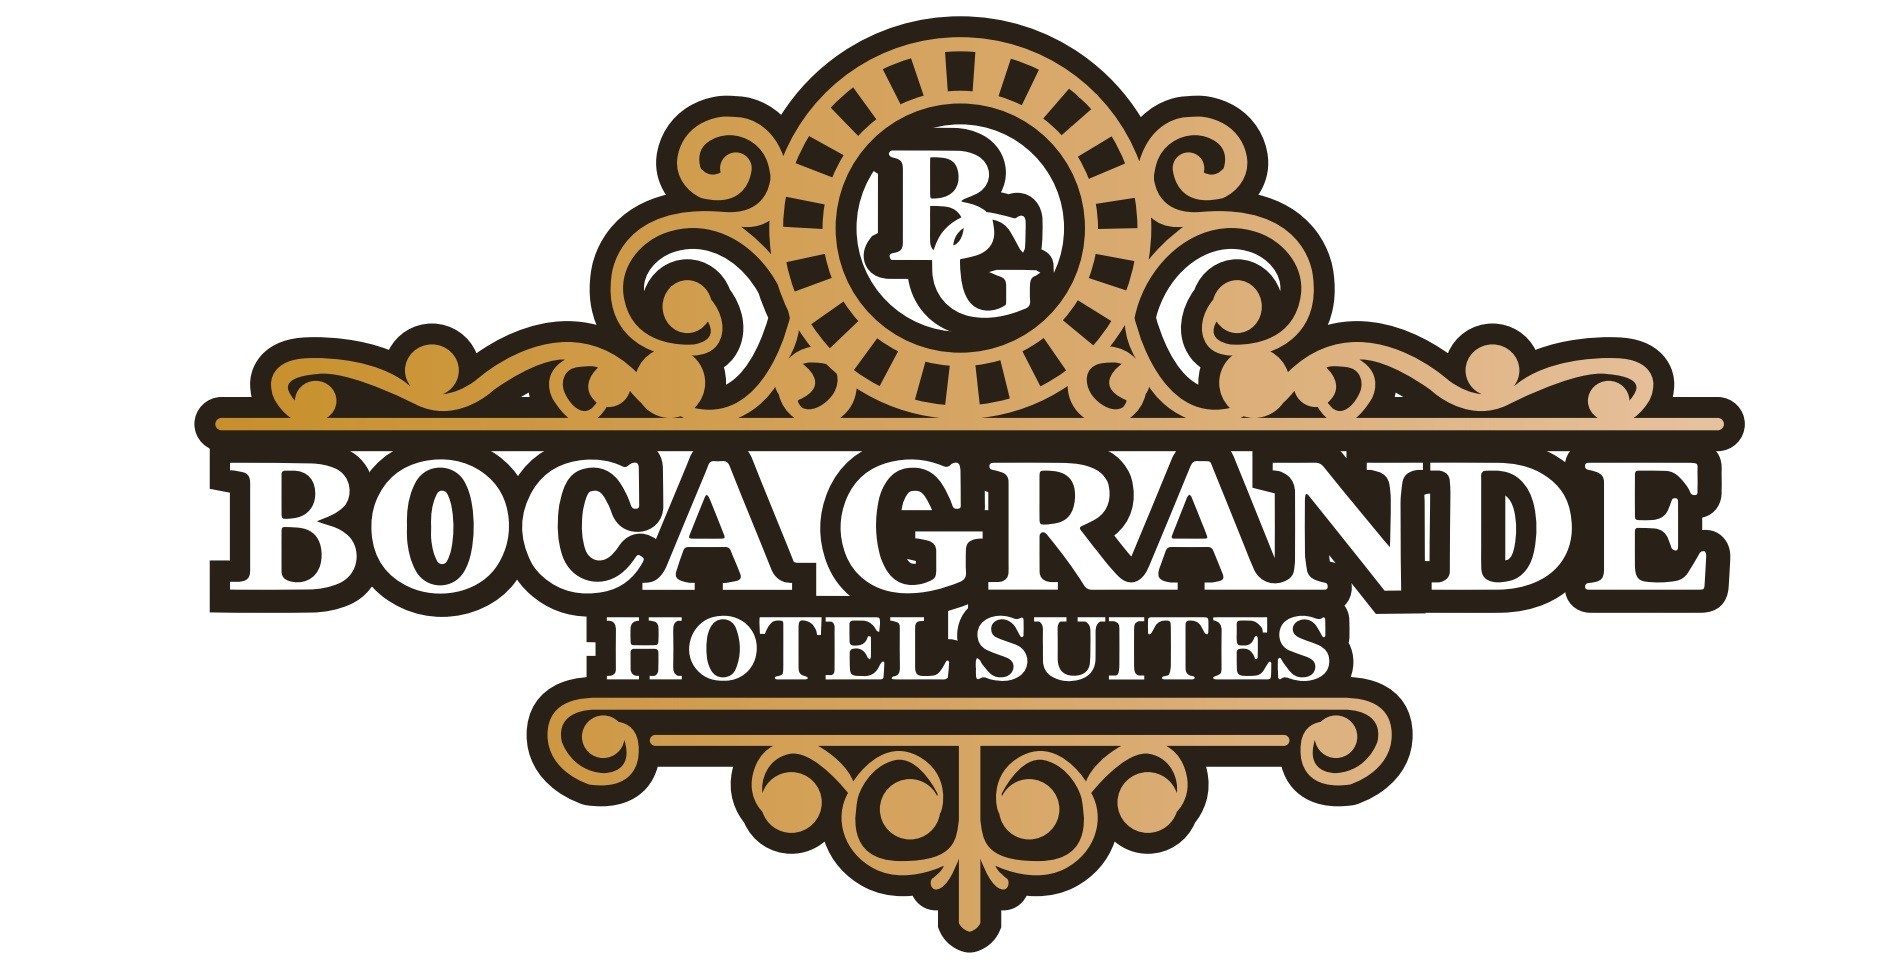 empleos disponibles - Boca Grande Hotel Suites Solicita Camareras o Camareros